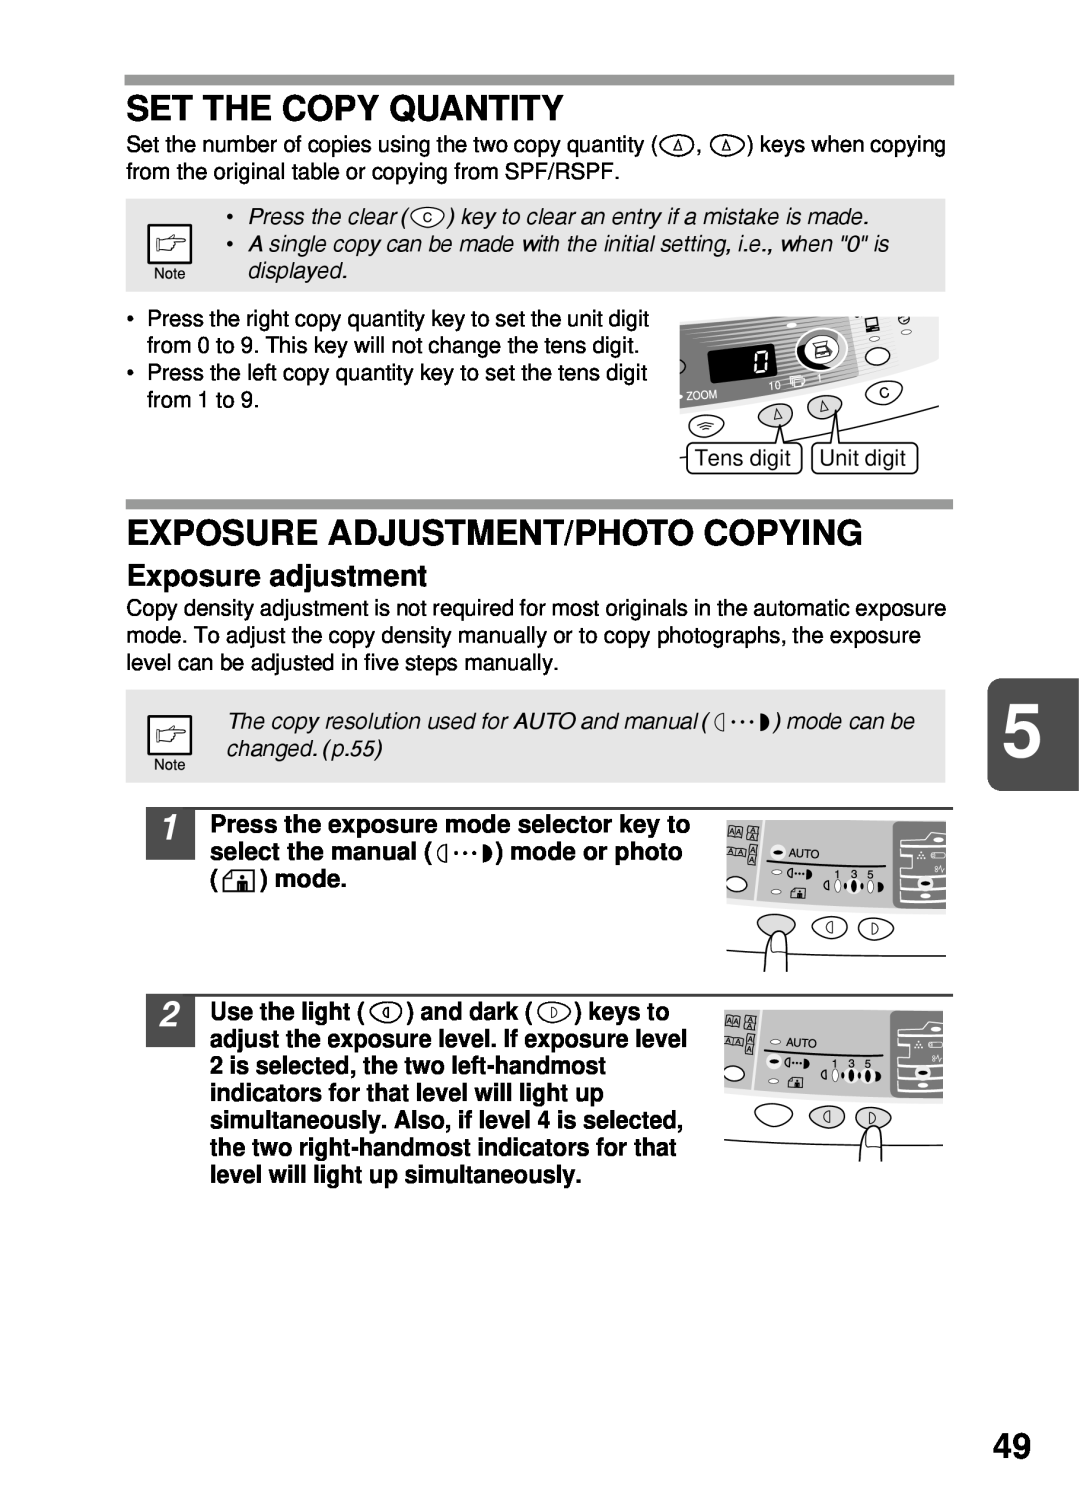 Sharp AL-1255, AL-1555, AL-1456, AL-1045 Set The Copy Quantity, Exposure Adjustment/Photo Copying, Exposure adjustment 